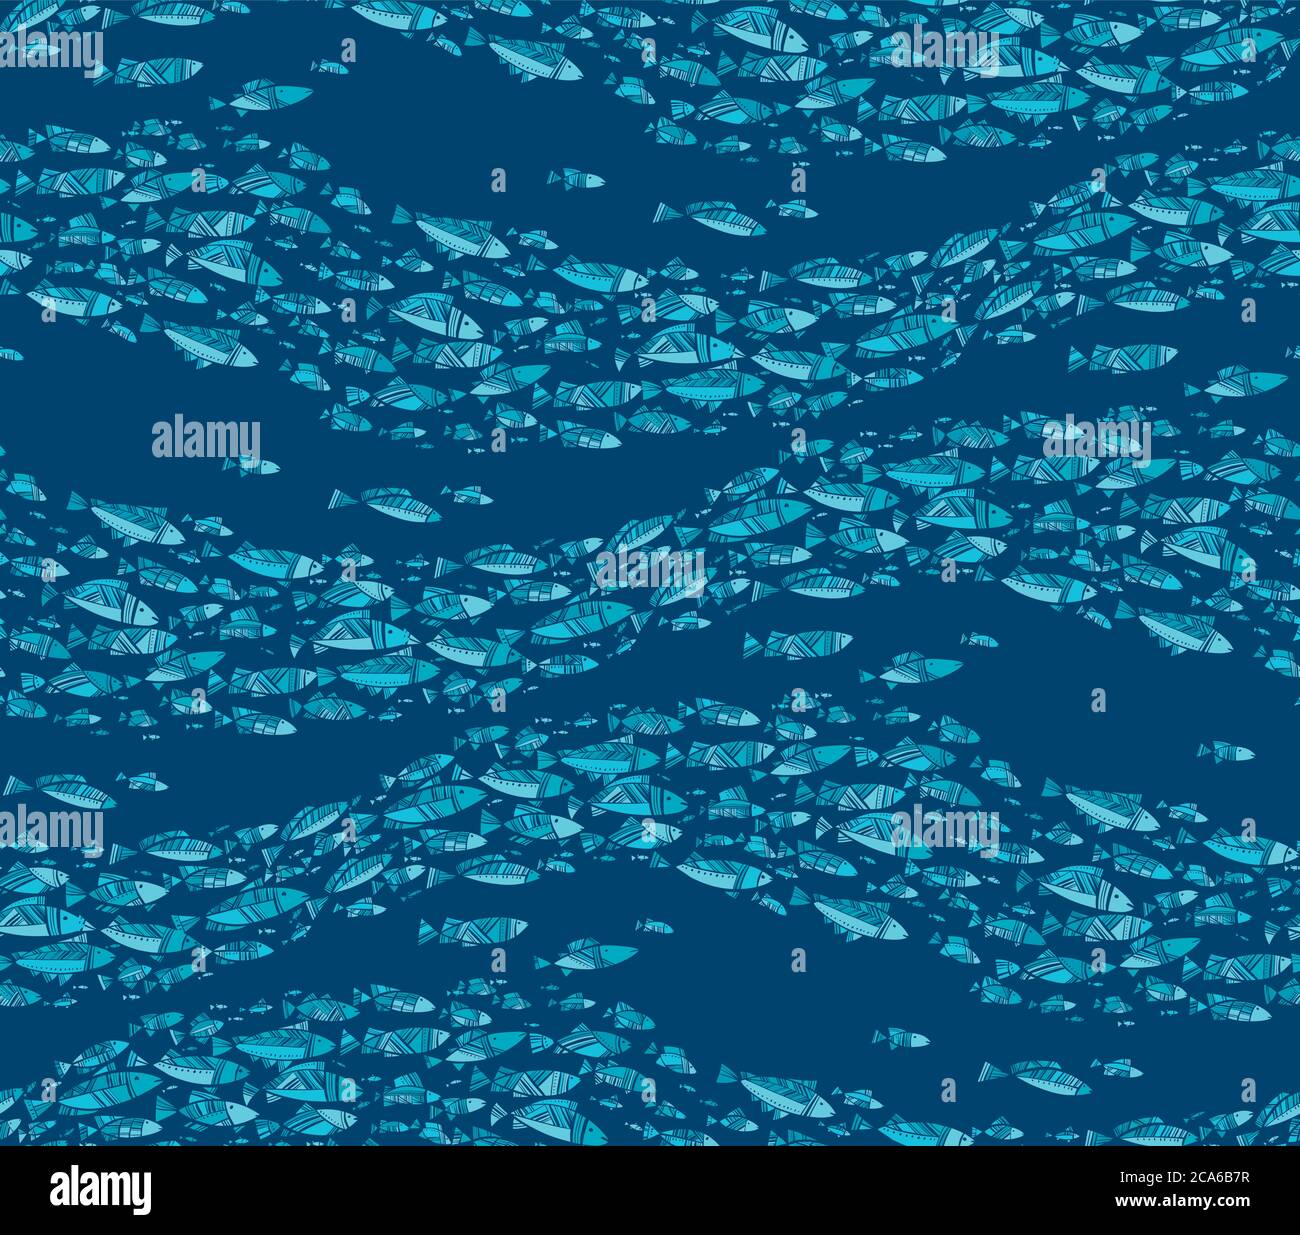 Deep Blue abstrakt Fisch Schule nahtlose Muster für Hintergrund, Wrap, Stoff, Textil, Wrap, Oberfläche, Web-und Print-Design. Welle Form dekorativen Fisch Stock Vektor